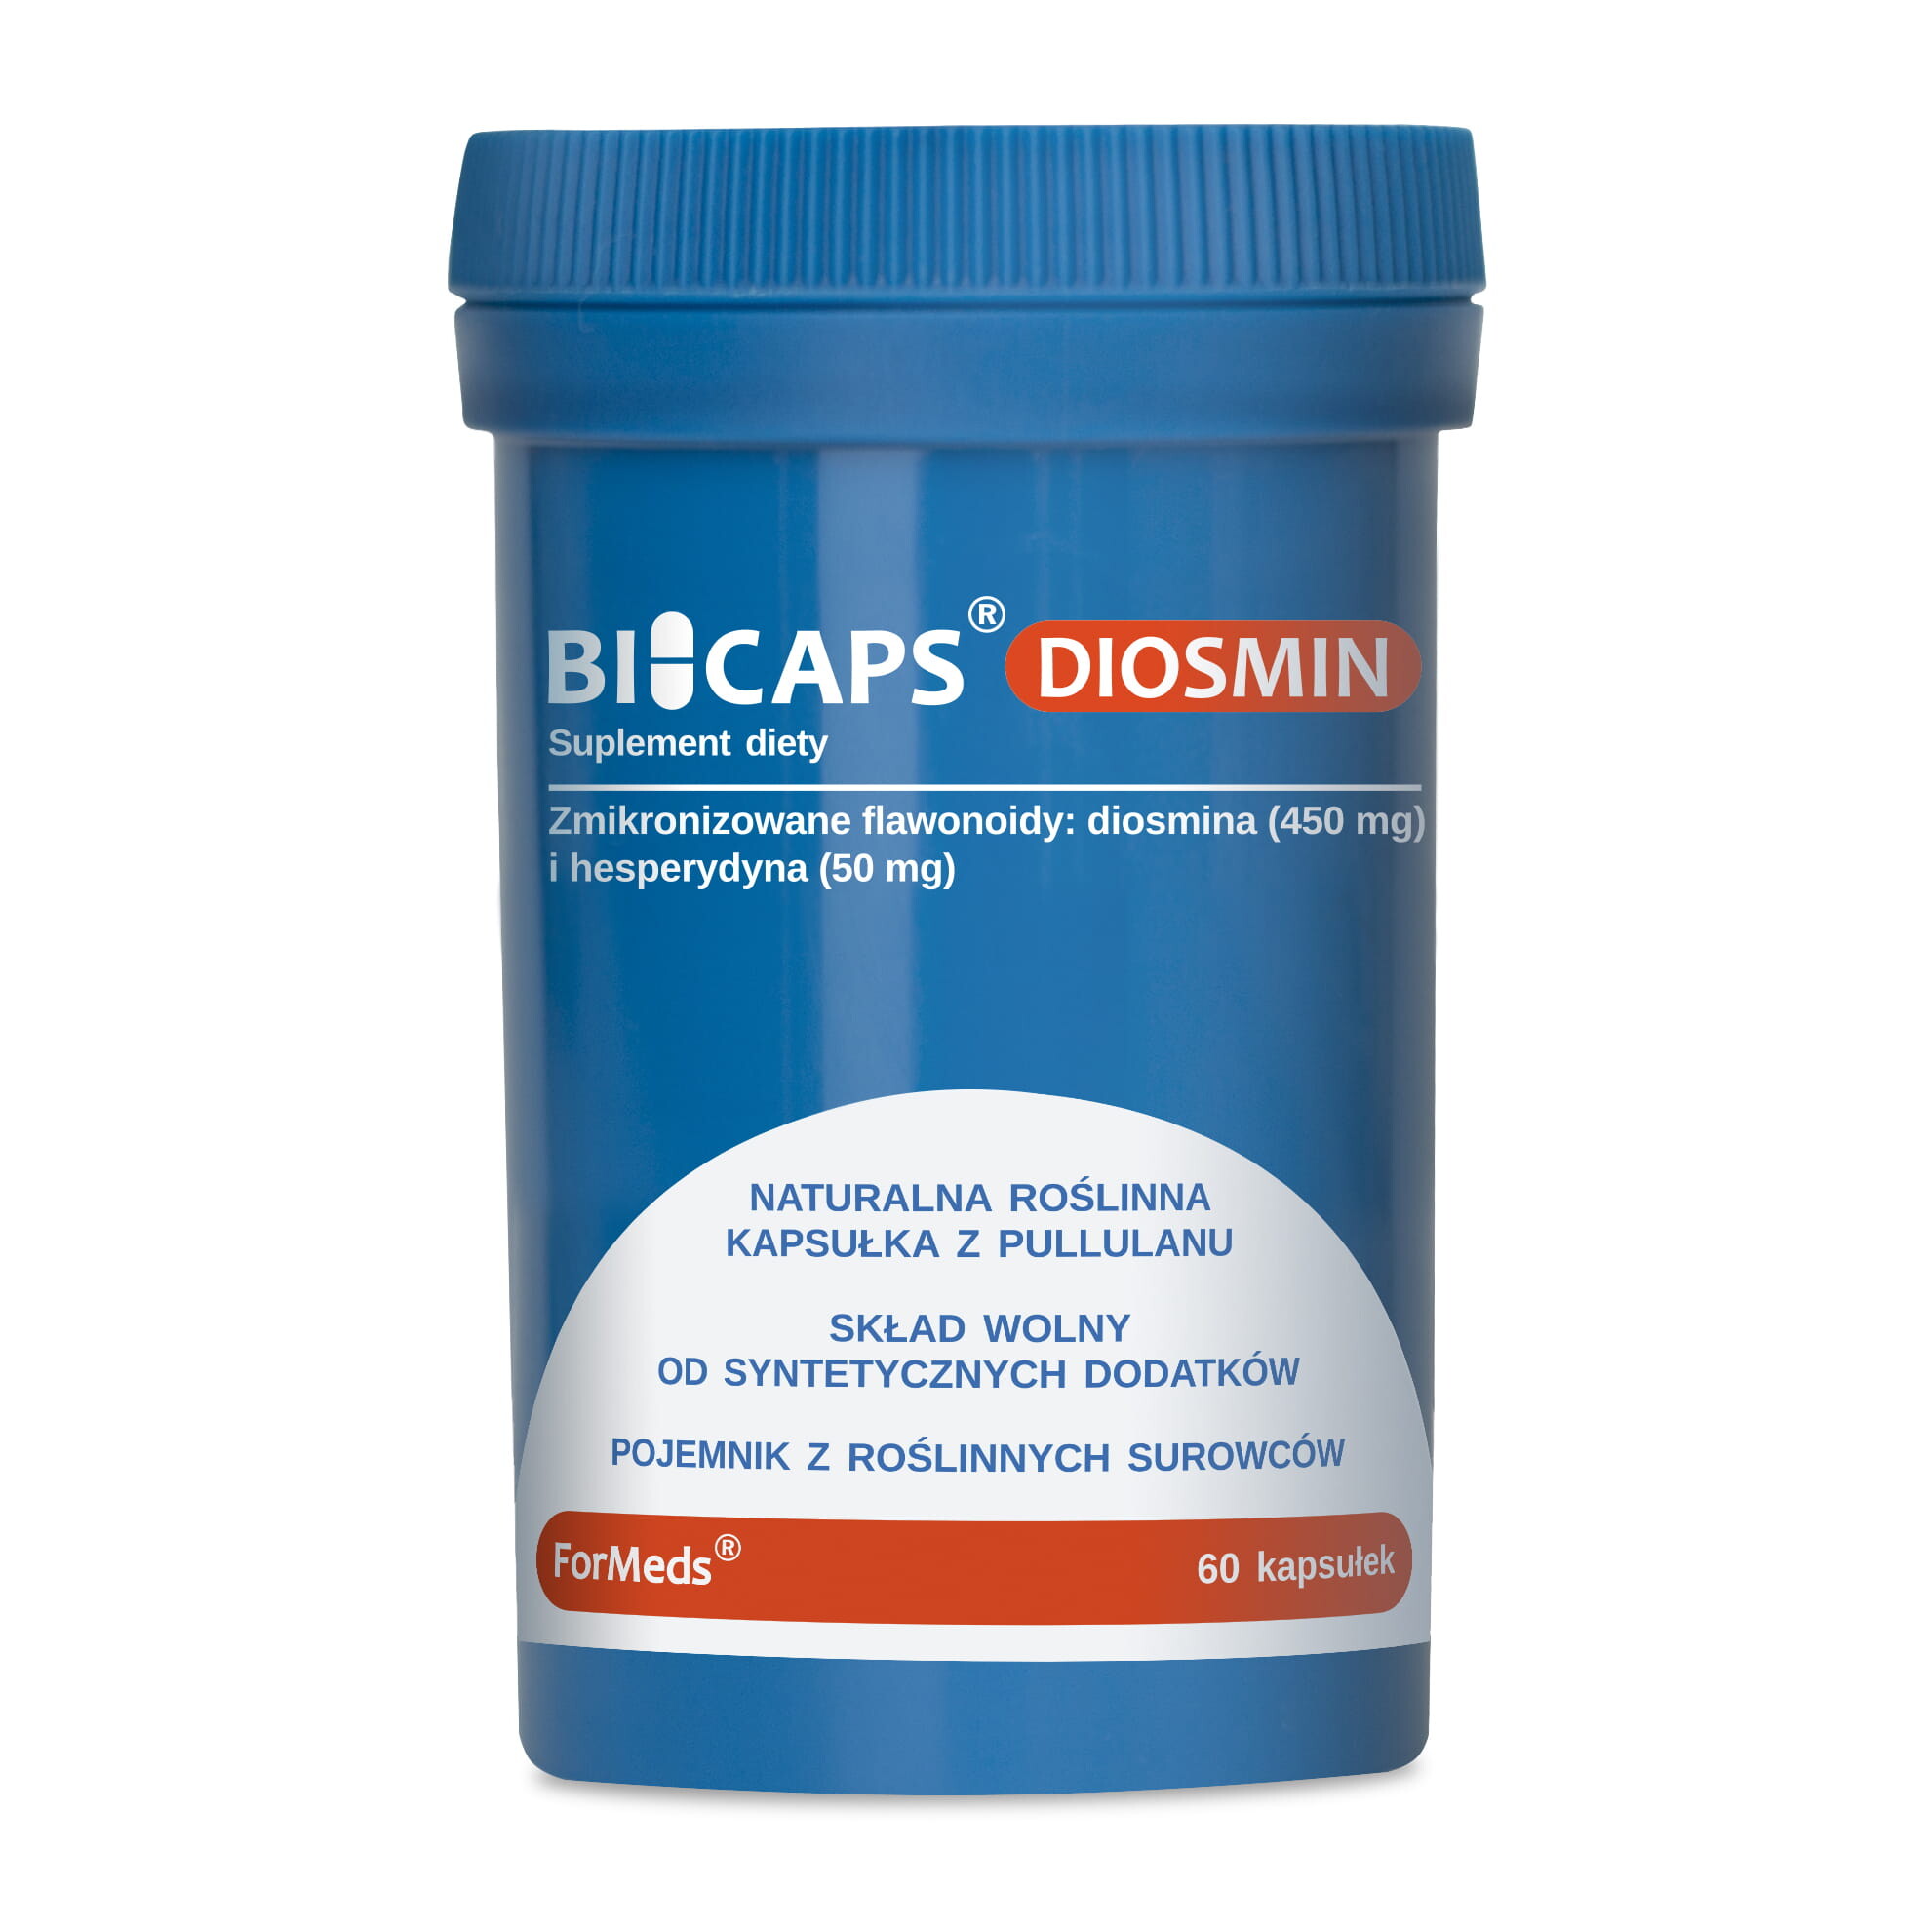 BICAPS DIOSMIN ( 500 mg) Diosmina - 60 kapsułek Formeds